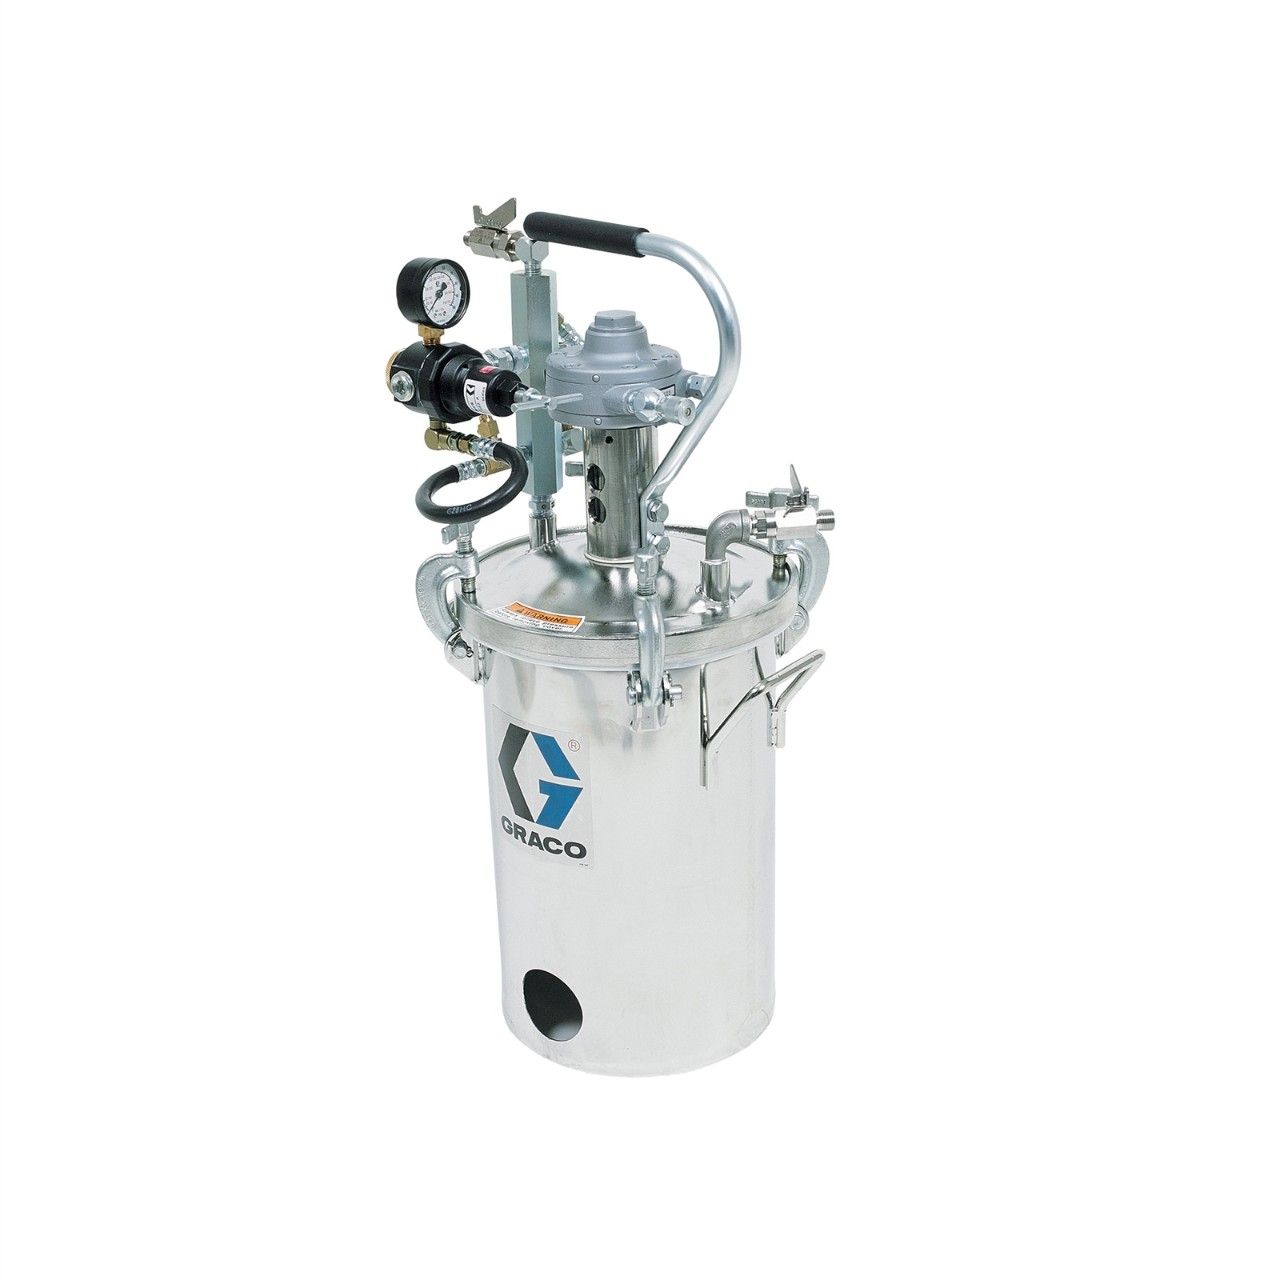 GRACO 2-Gallonen-Hochdruckbehälter (HVLP), Behälter mit Rührwerk - 236158